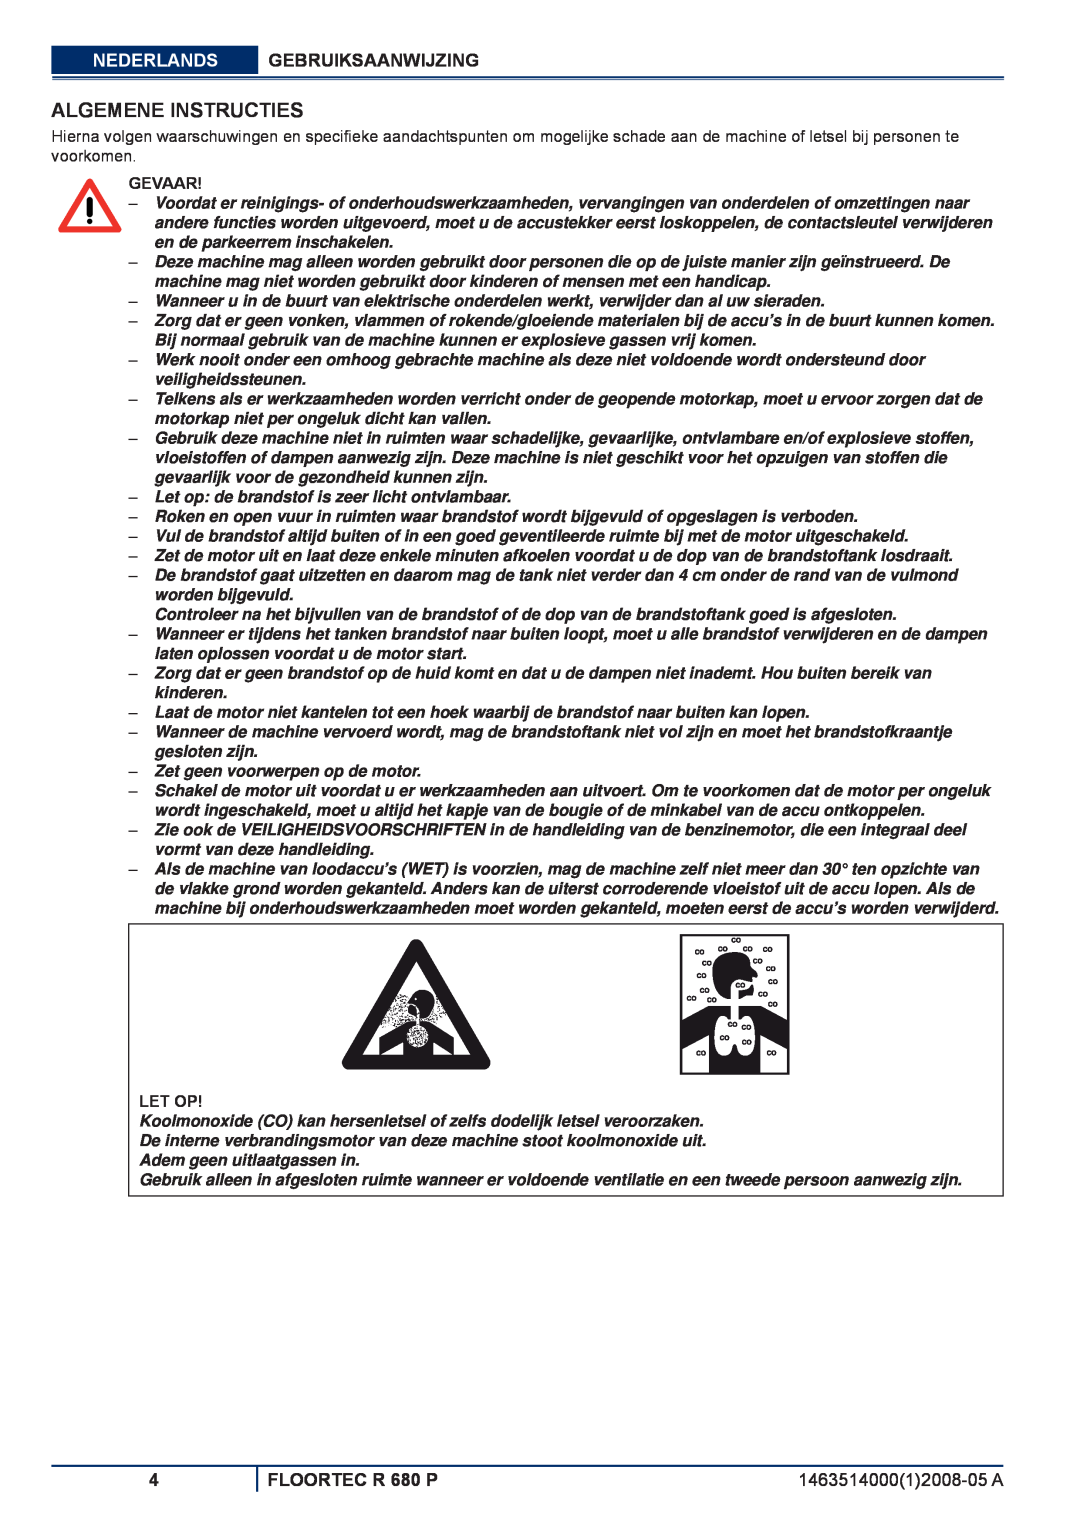 Nilfisk-ALTO manuel dutilisation Algemene Instructies, Nederlands Gebruiksaanwijzing, FLOORTEC R 680 P, Gevaar, Let Op 